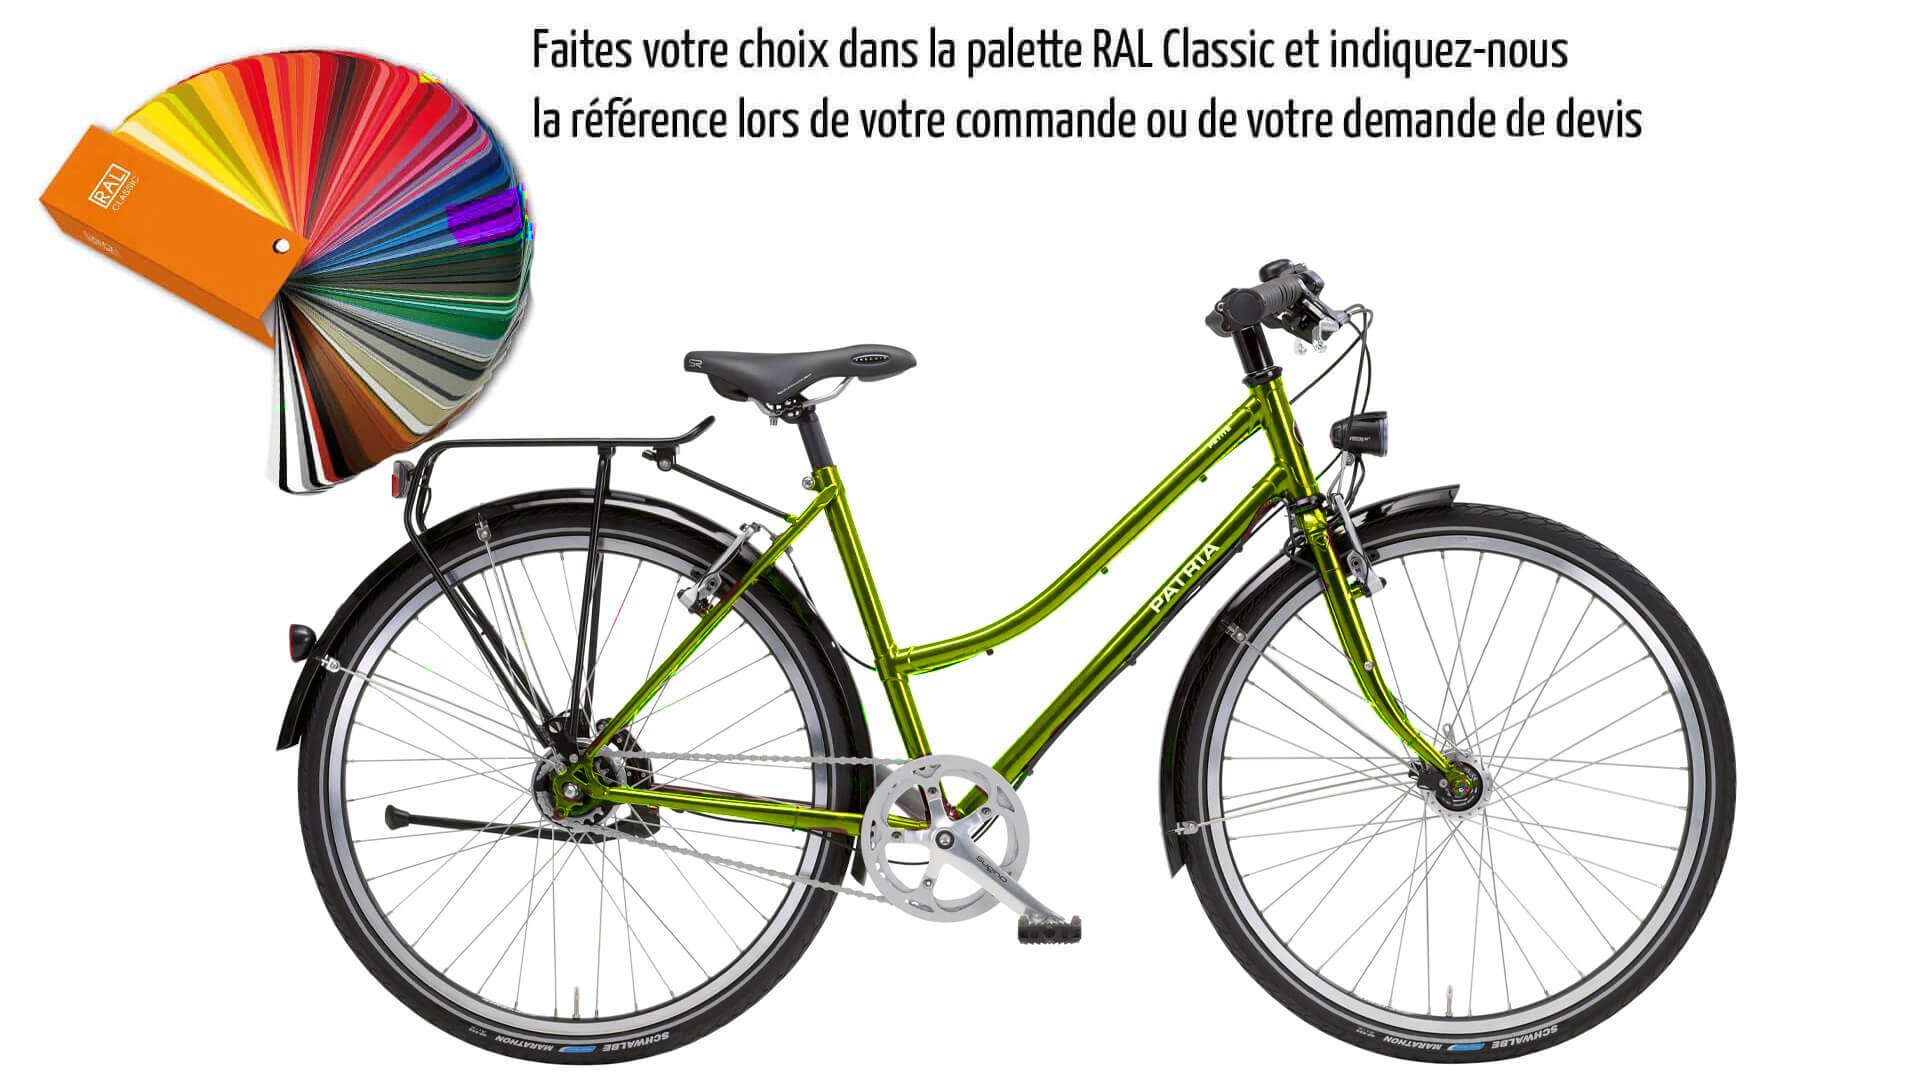 Personnalisé votre vélo Petite selon vos envies ! Un choix illimité de couleurs s'offre à vous 